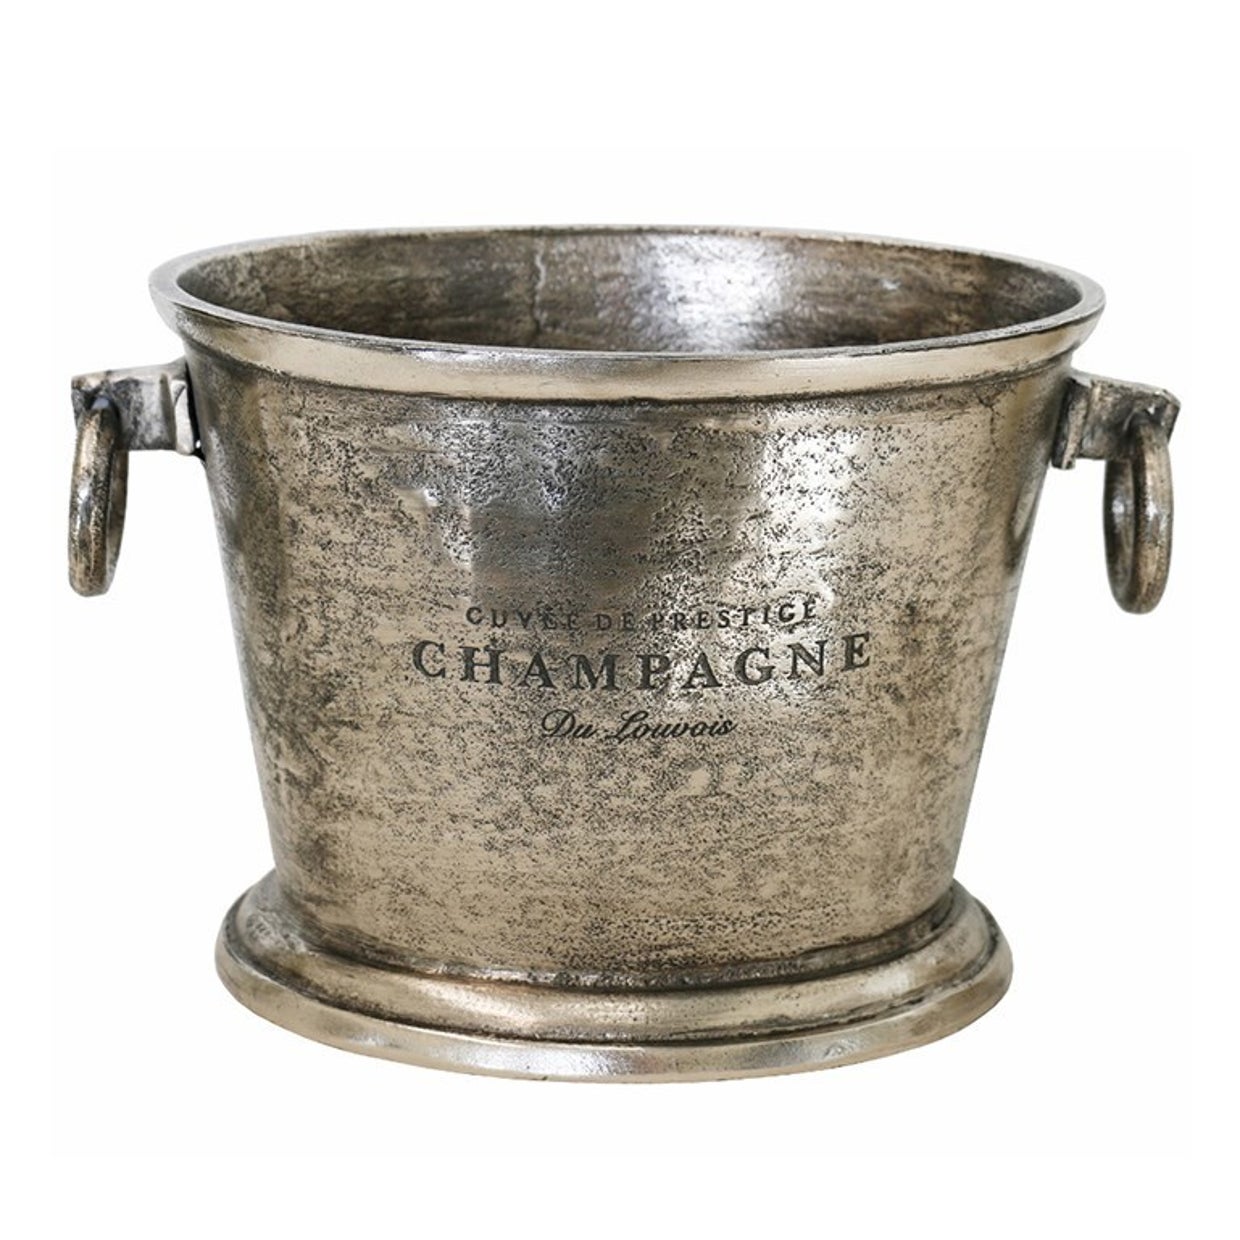 Long Island Oval Wine Bucket in Antique Nickel